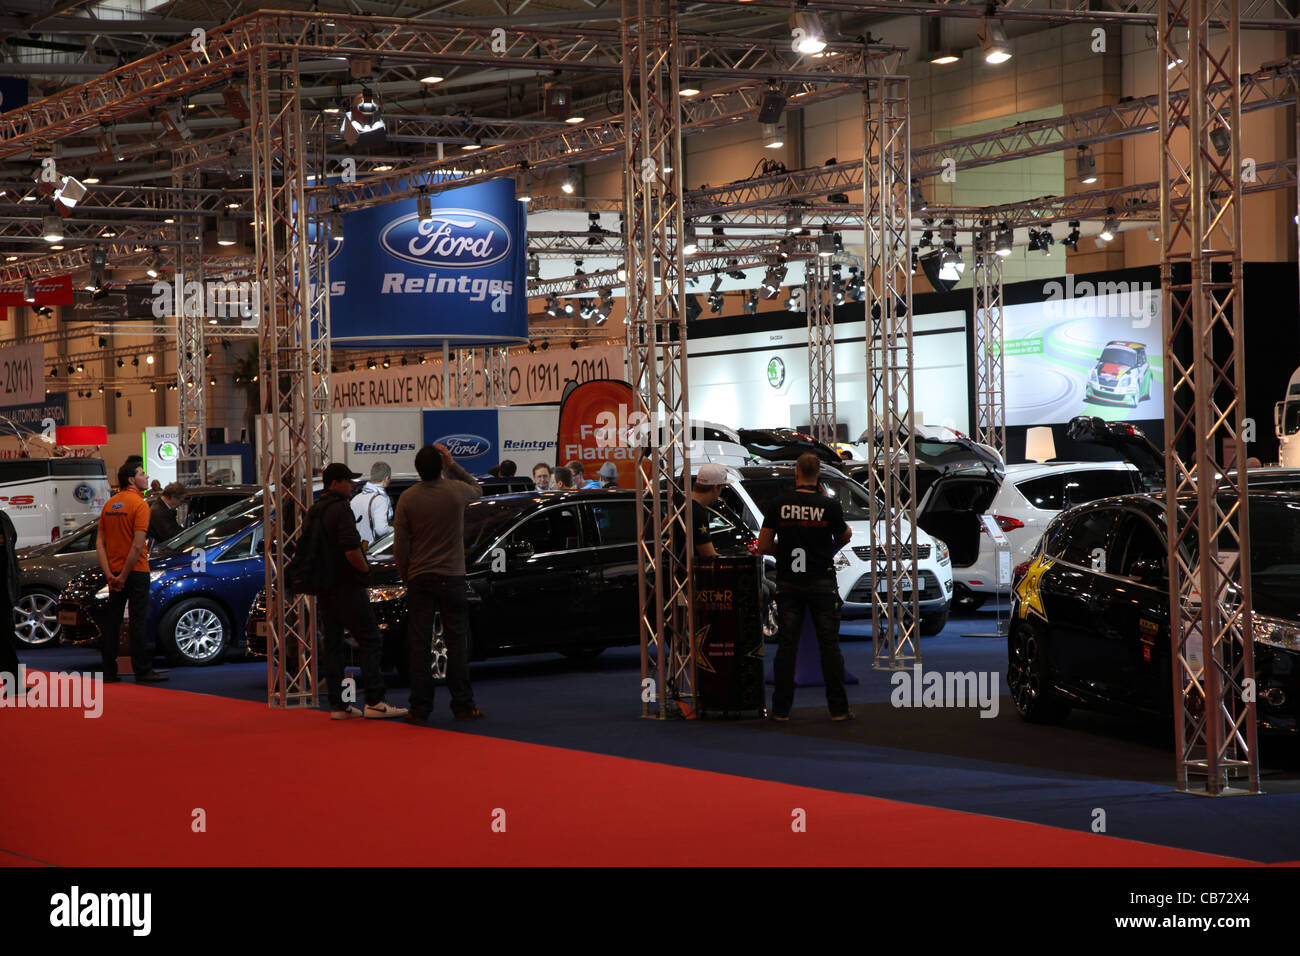 Ford-Stand auf der Essen Motor Show in Essen, Deutschland, am 29. November 2011 Stockfoto